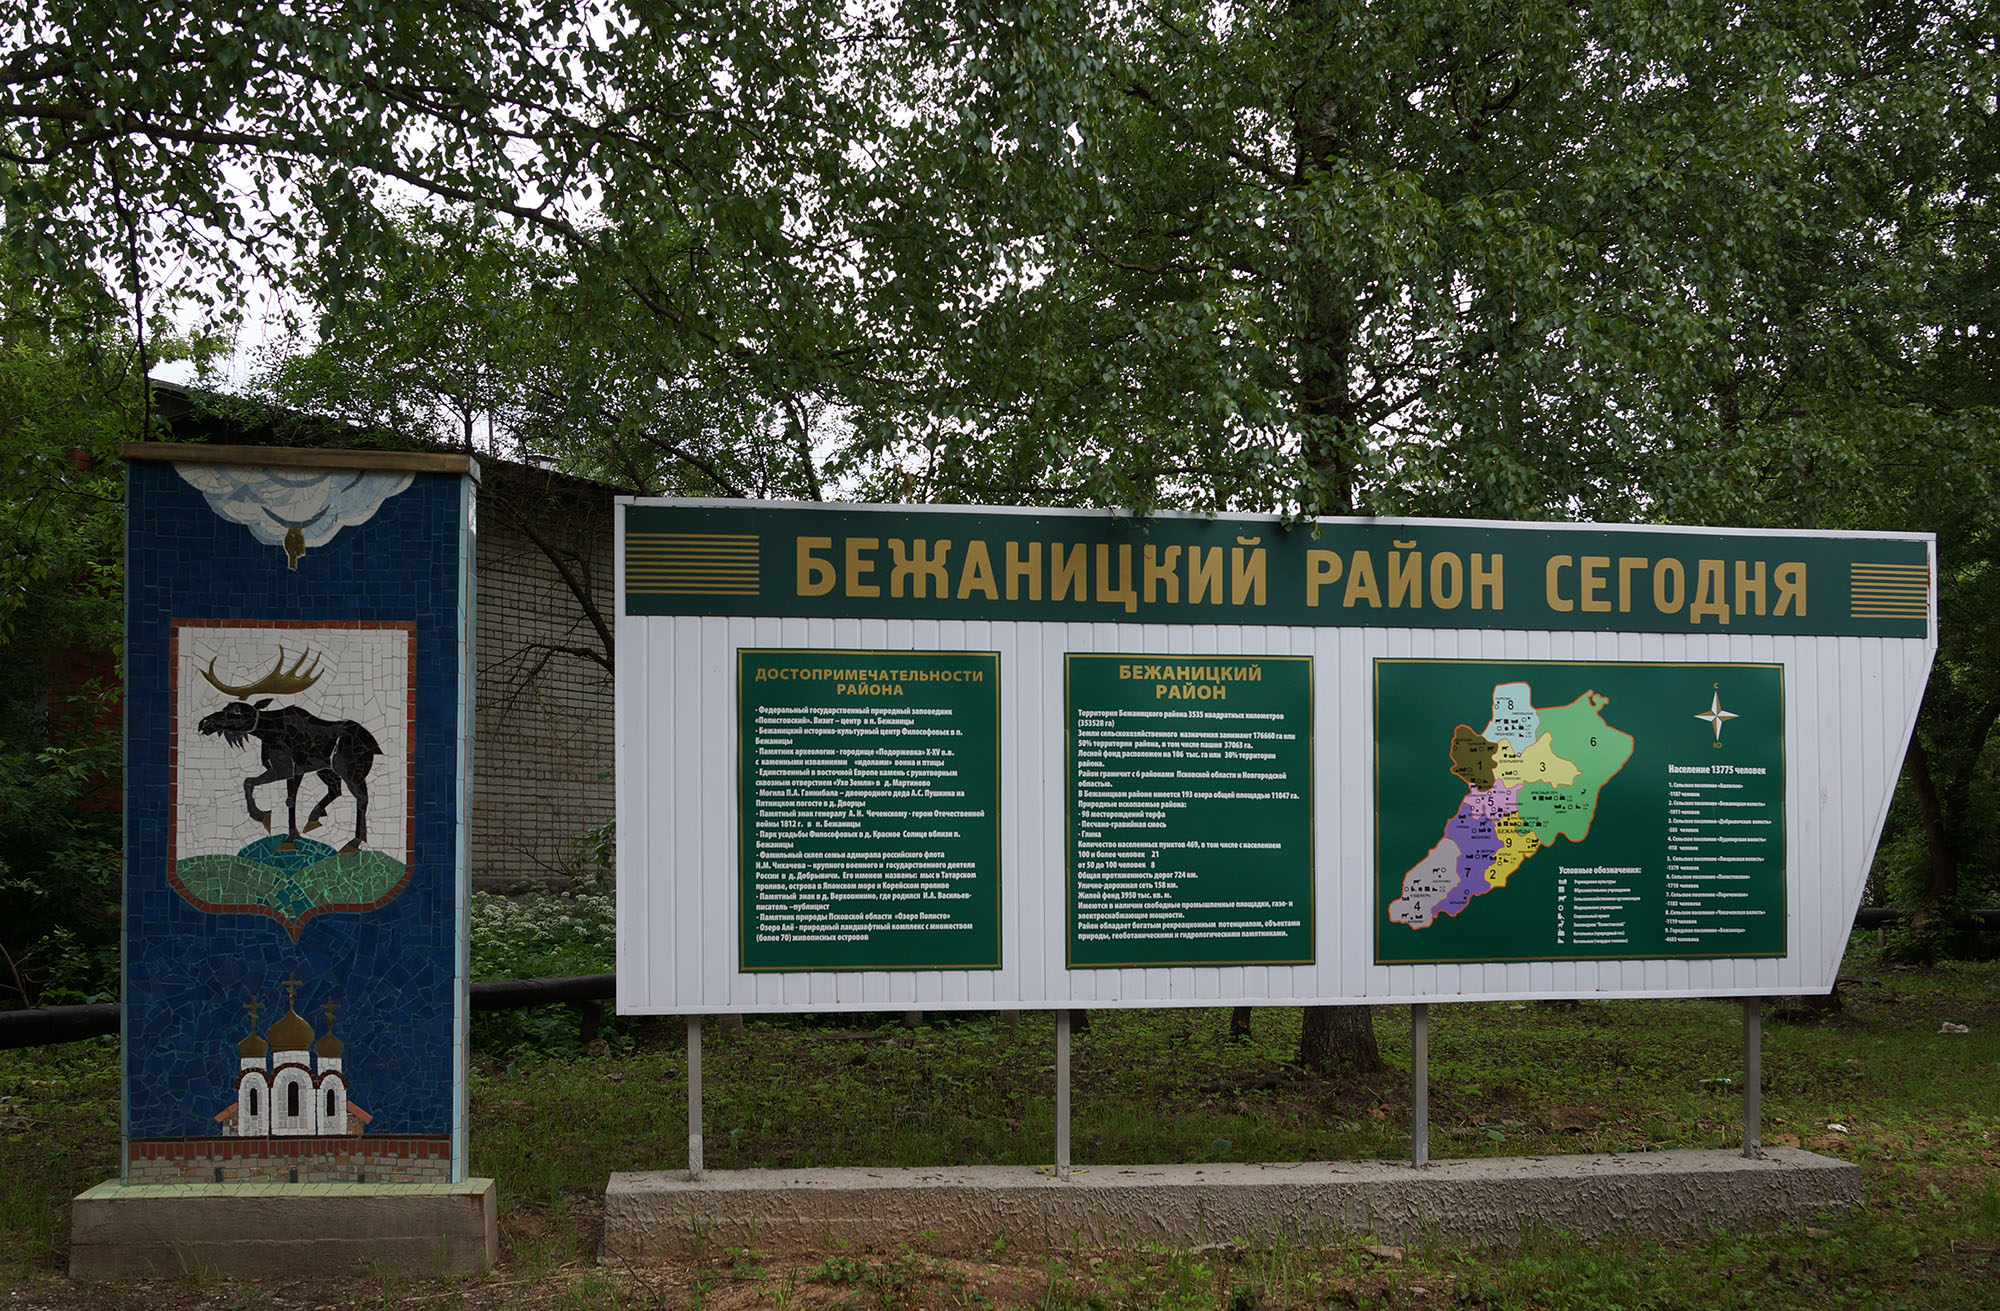 Бежаницы, Бежаницкий район, Псковская область.